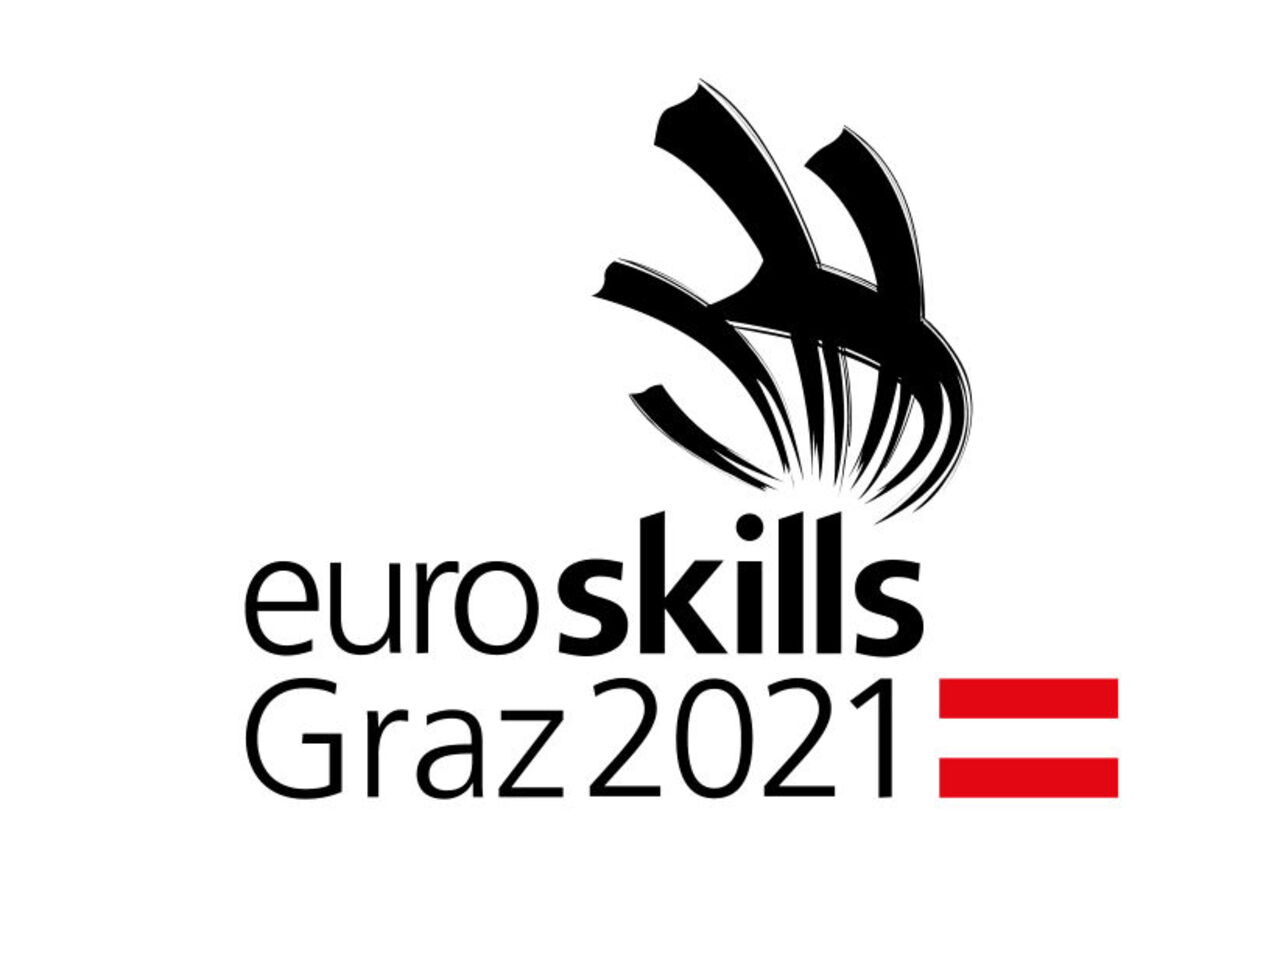 EuroSkills Graz 2021 begins this week